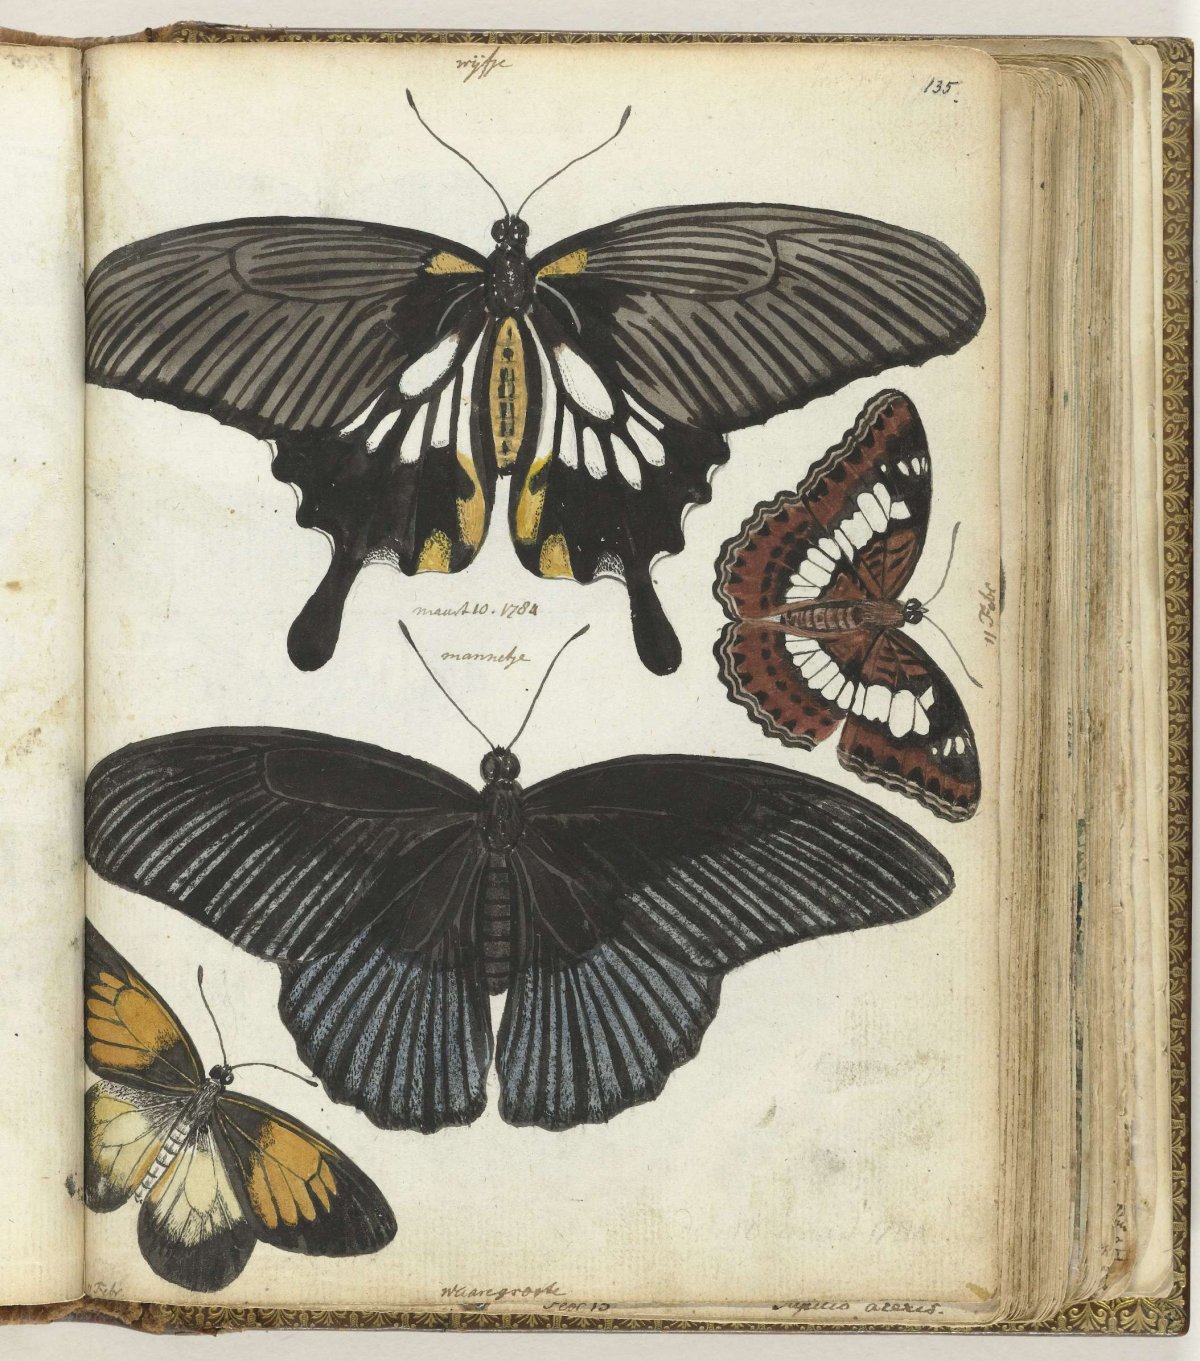 Butterflies of Java, Jan Brandes, 1784